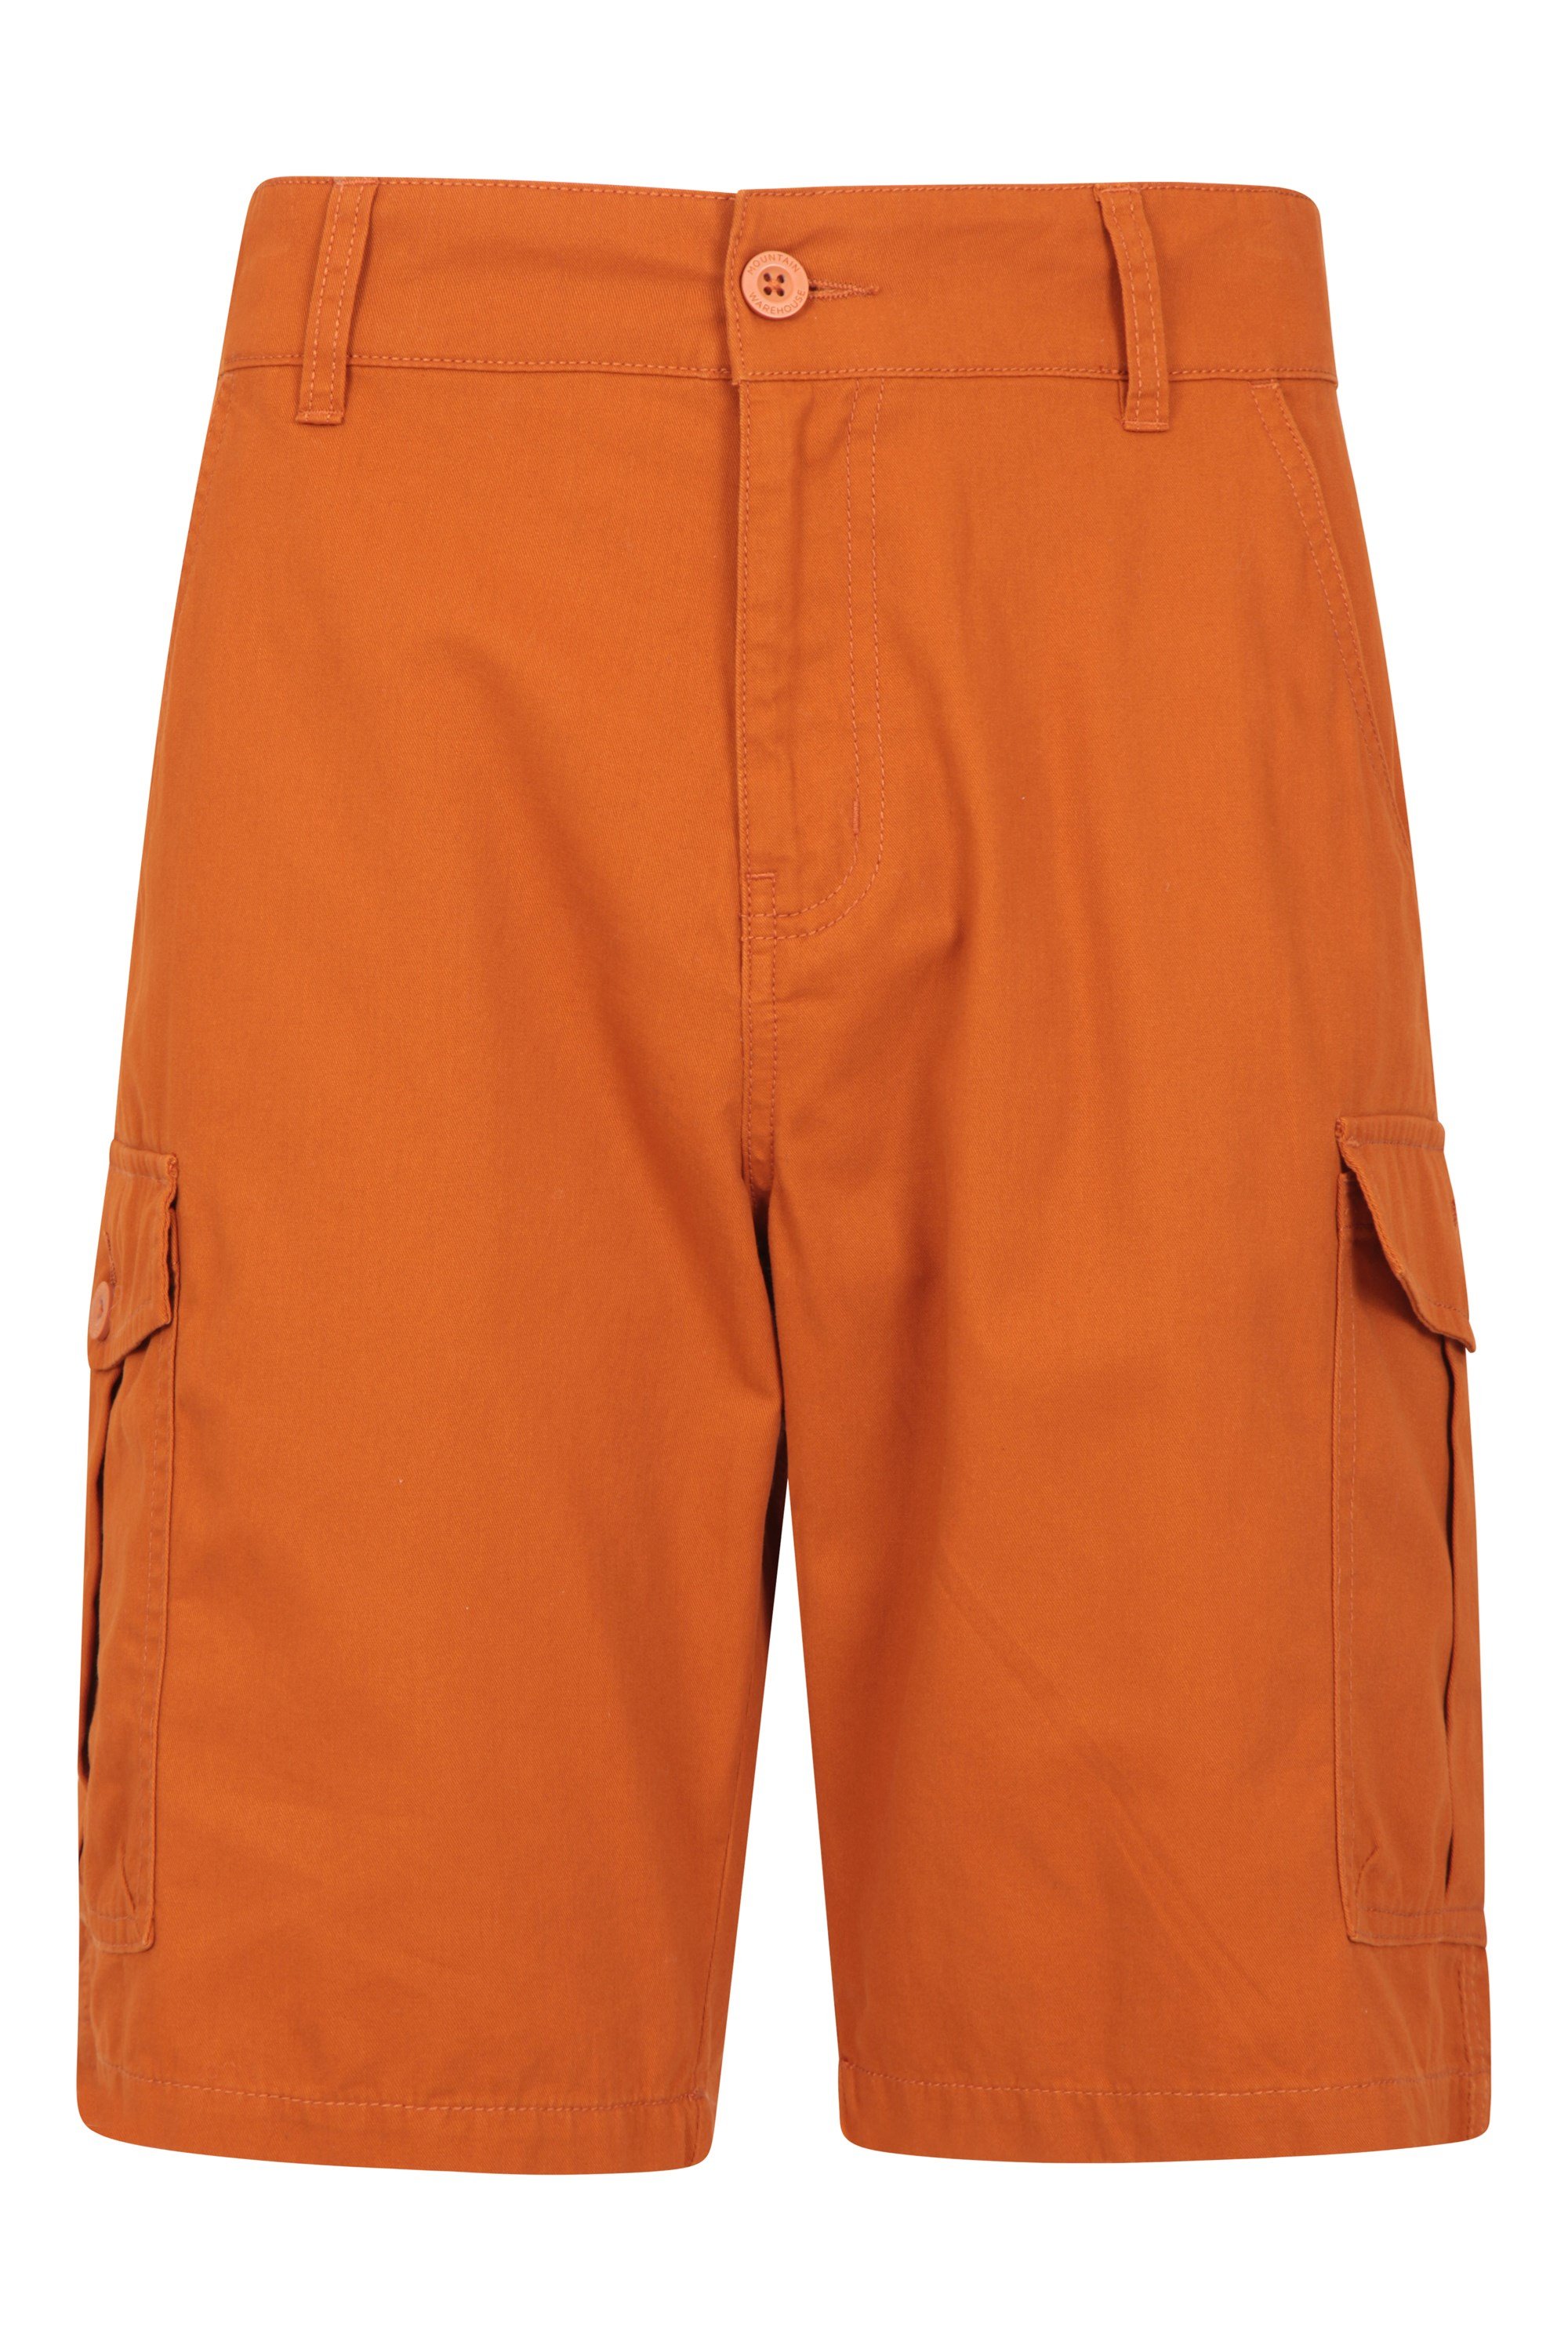 Lakeside Mens Cargo Shorts - Orange